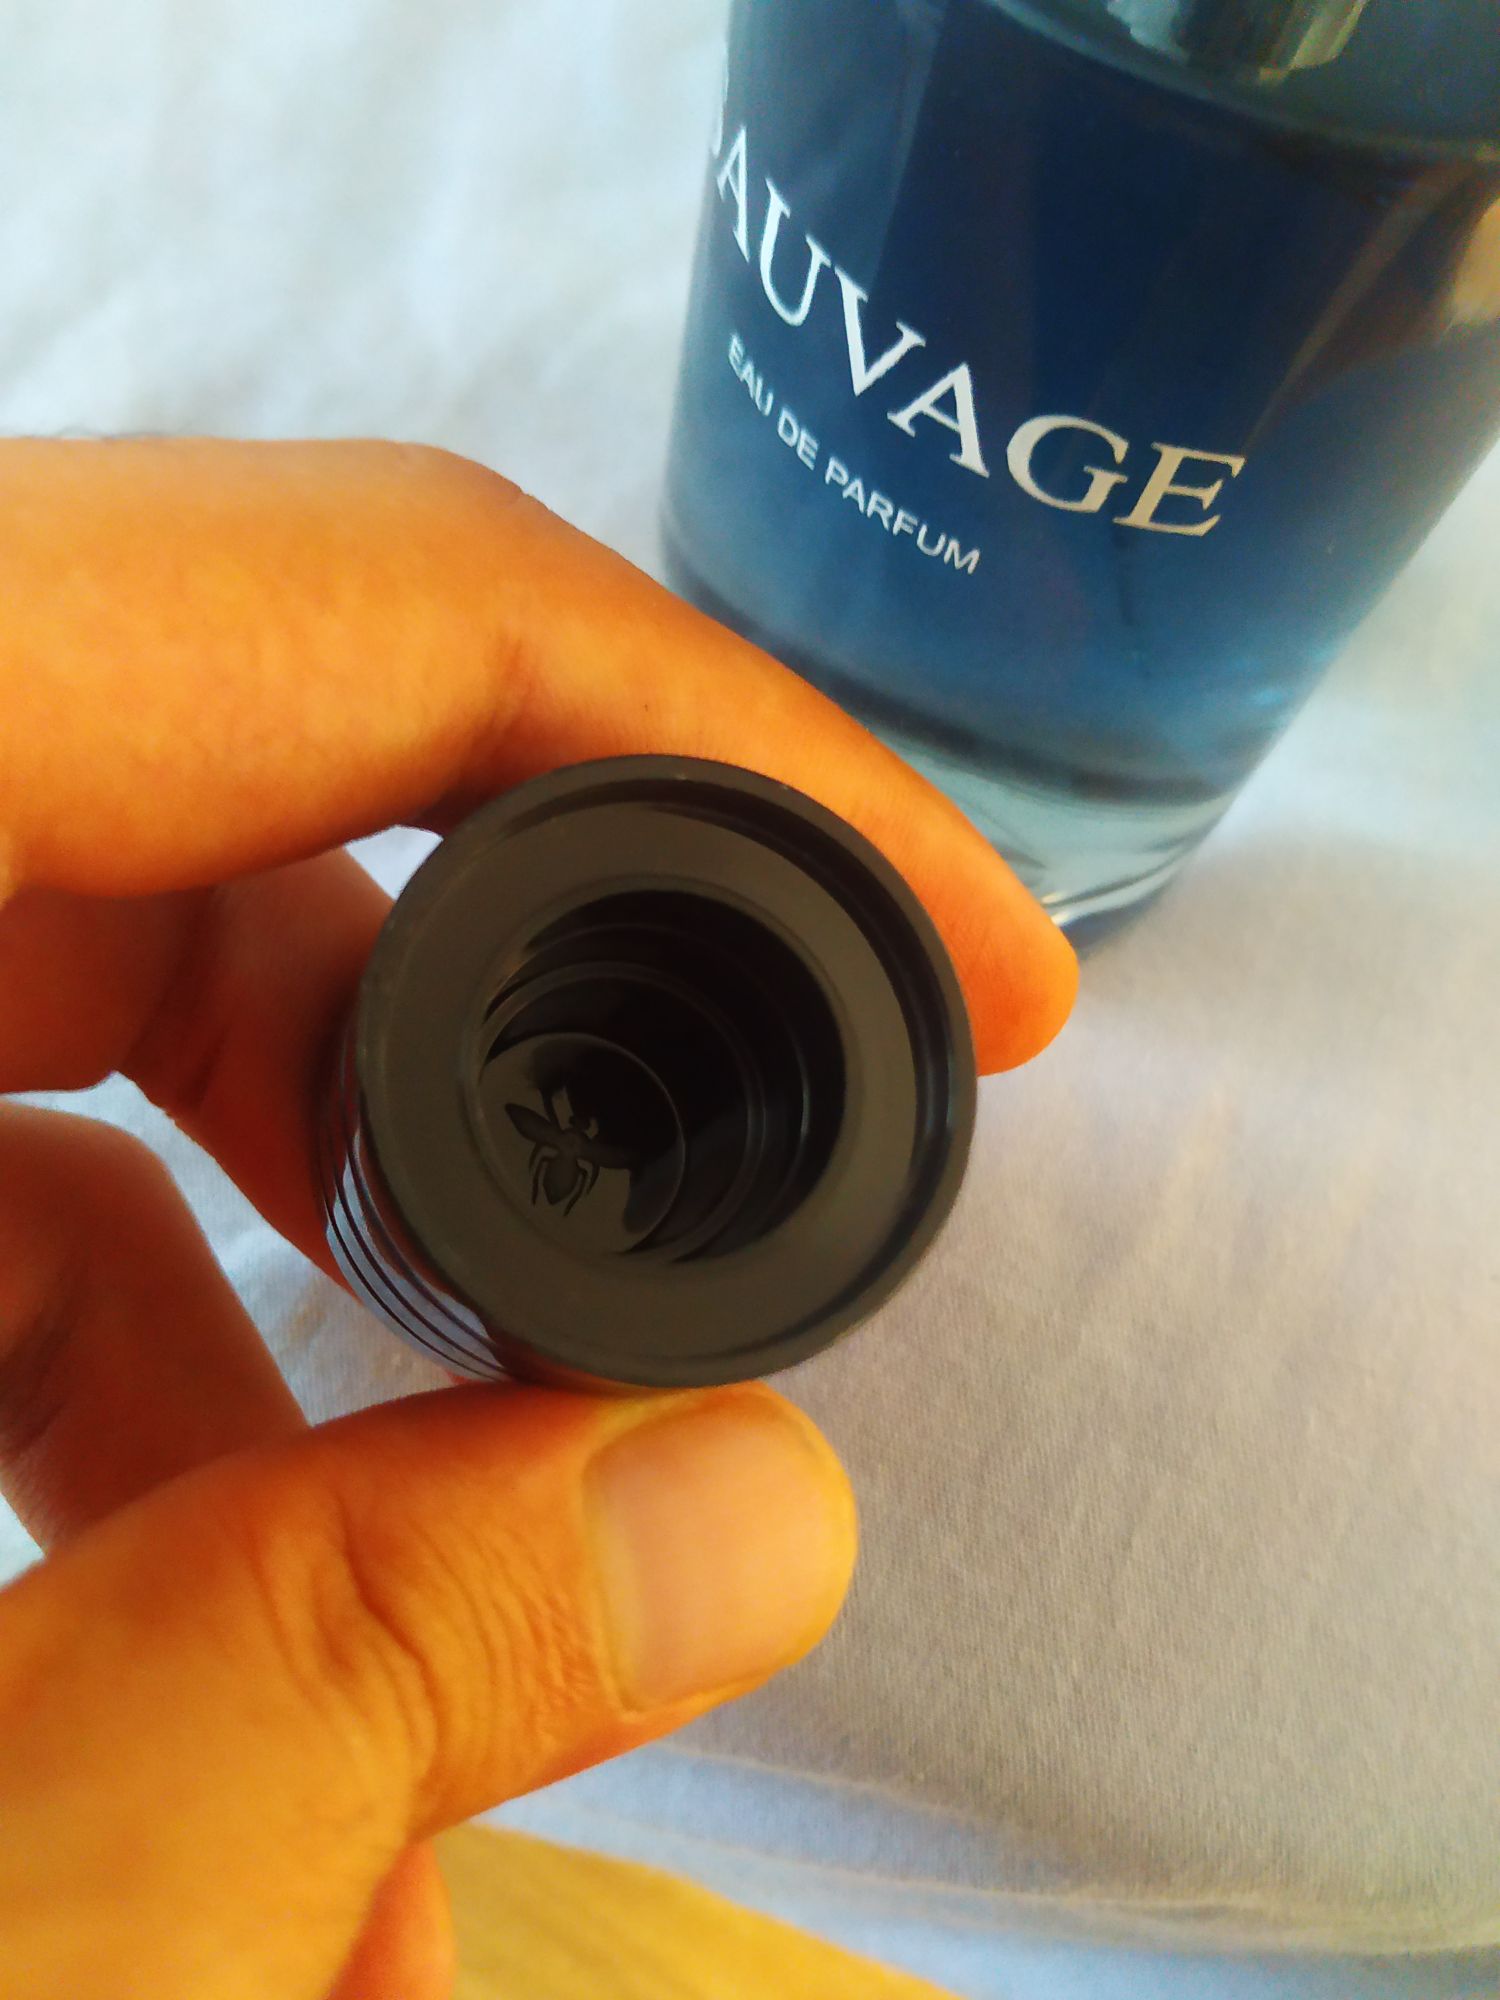 Dior Sauvage 100 mL Eau de Parfum Erkek Parfümü | DonanımHaber Forum